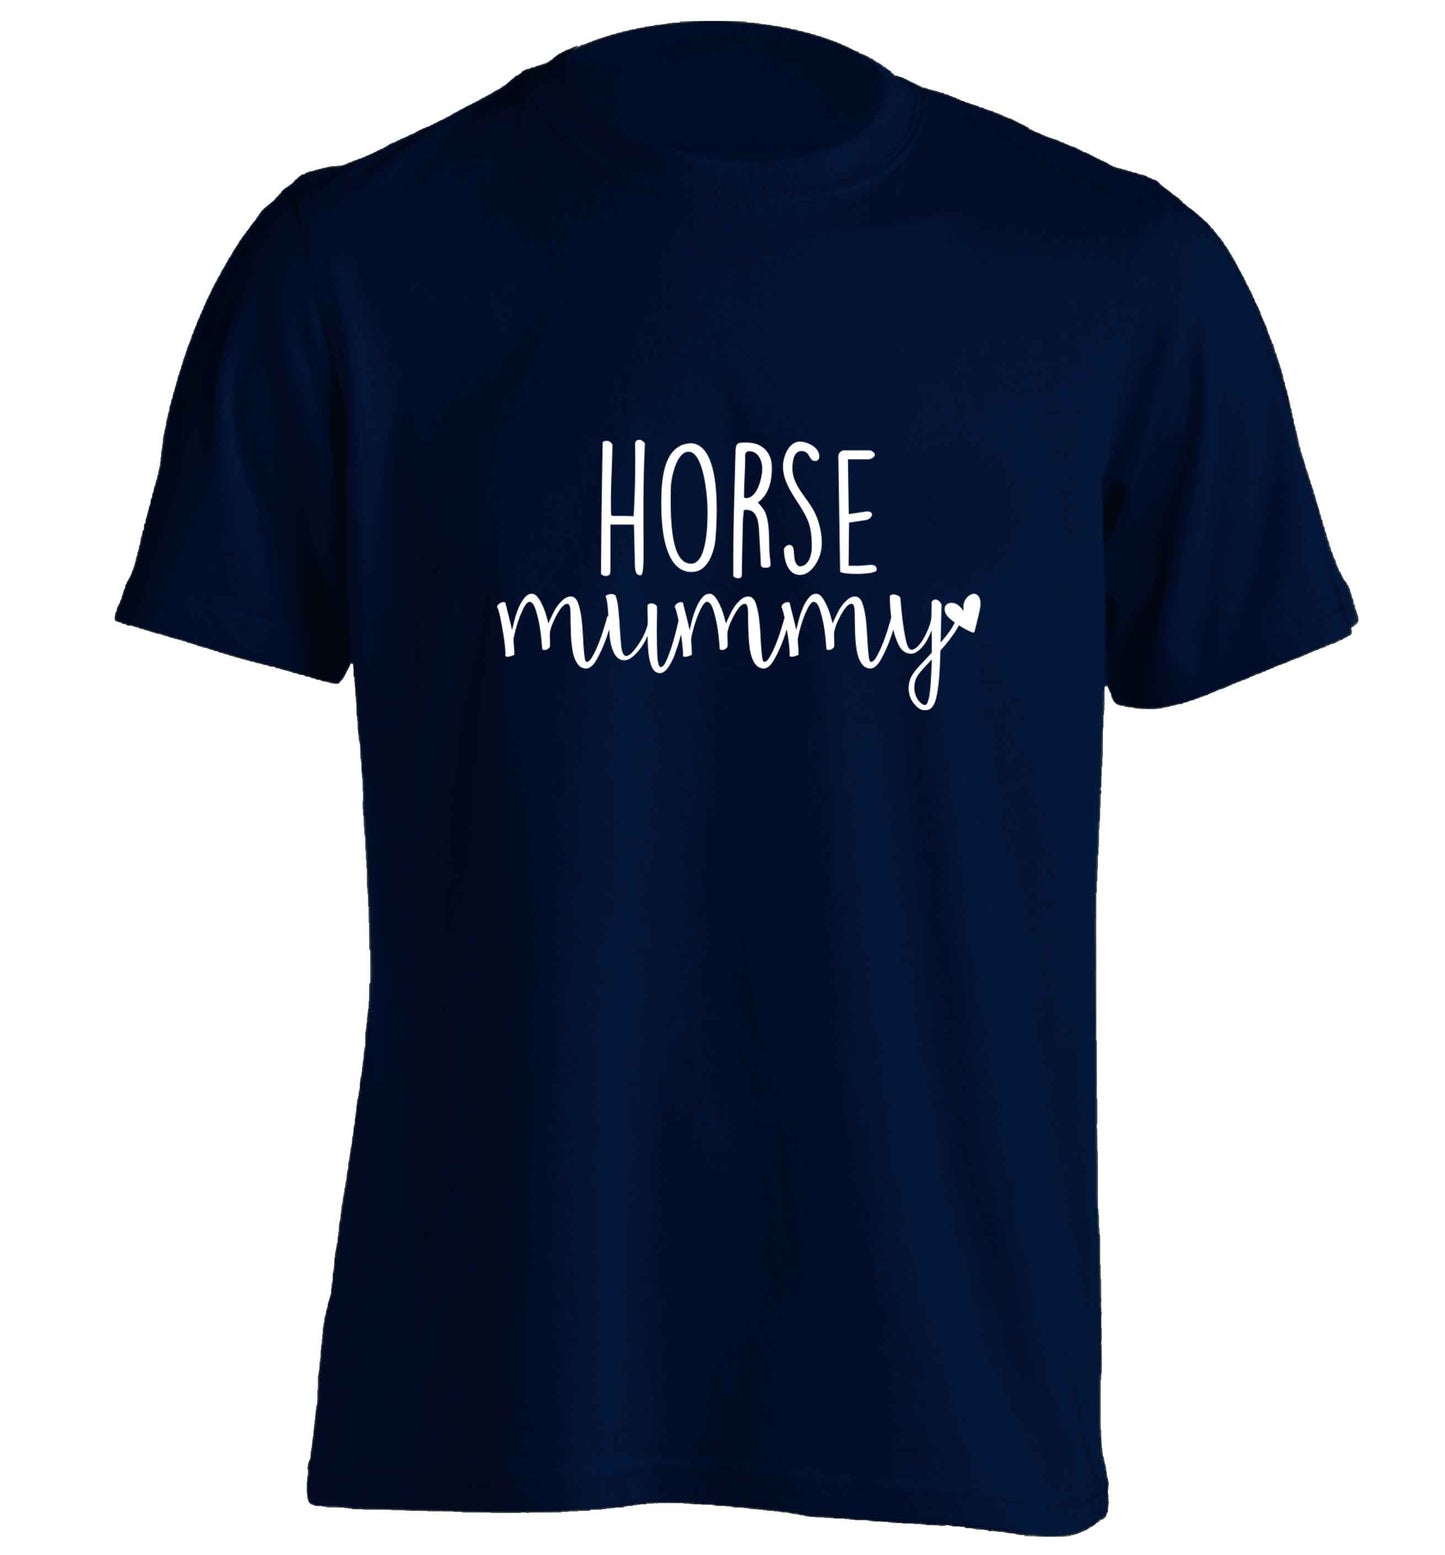 Horse mummy adults unisex navy Tshirt 2XL